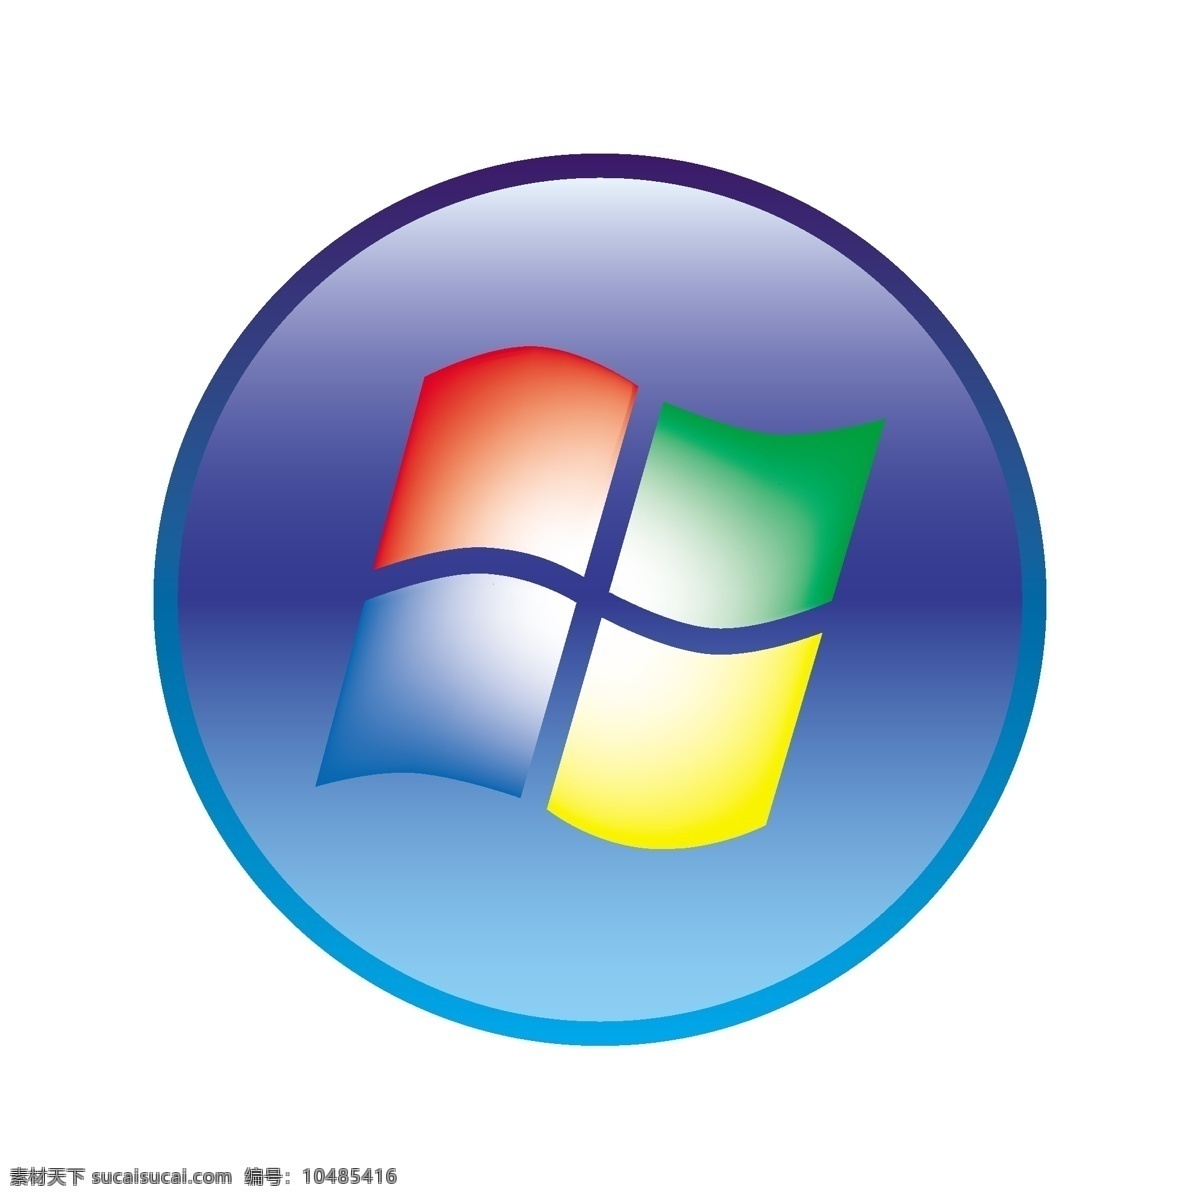 微软 windows 操作系统图片 标志 标识标志图标 矢量 操作系统 现代科技